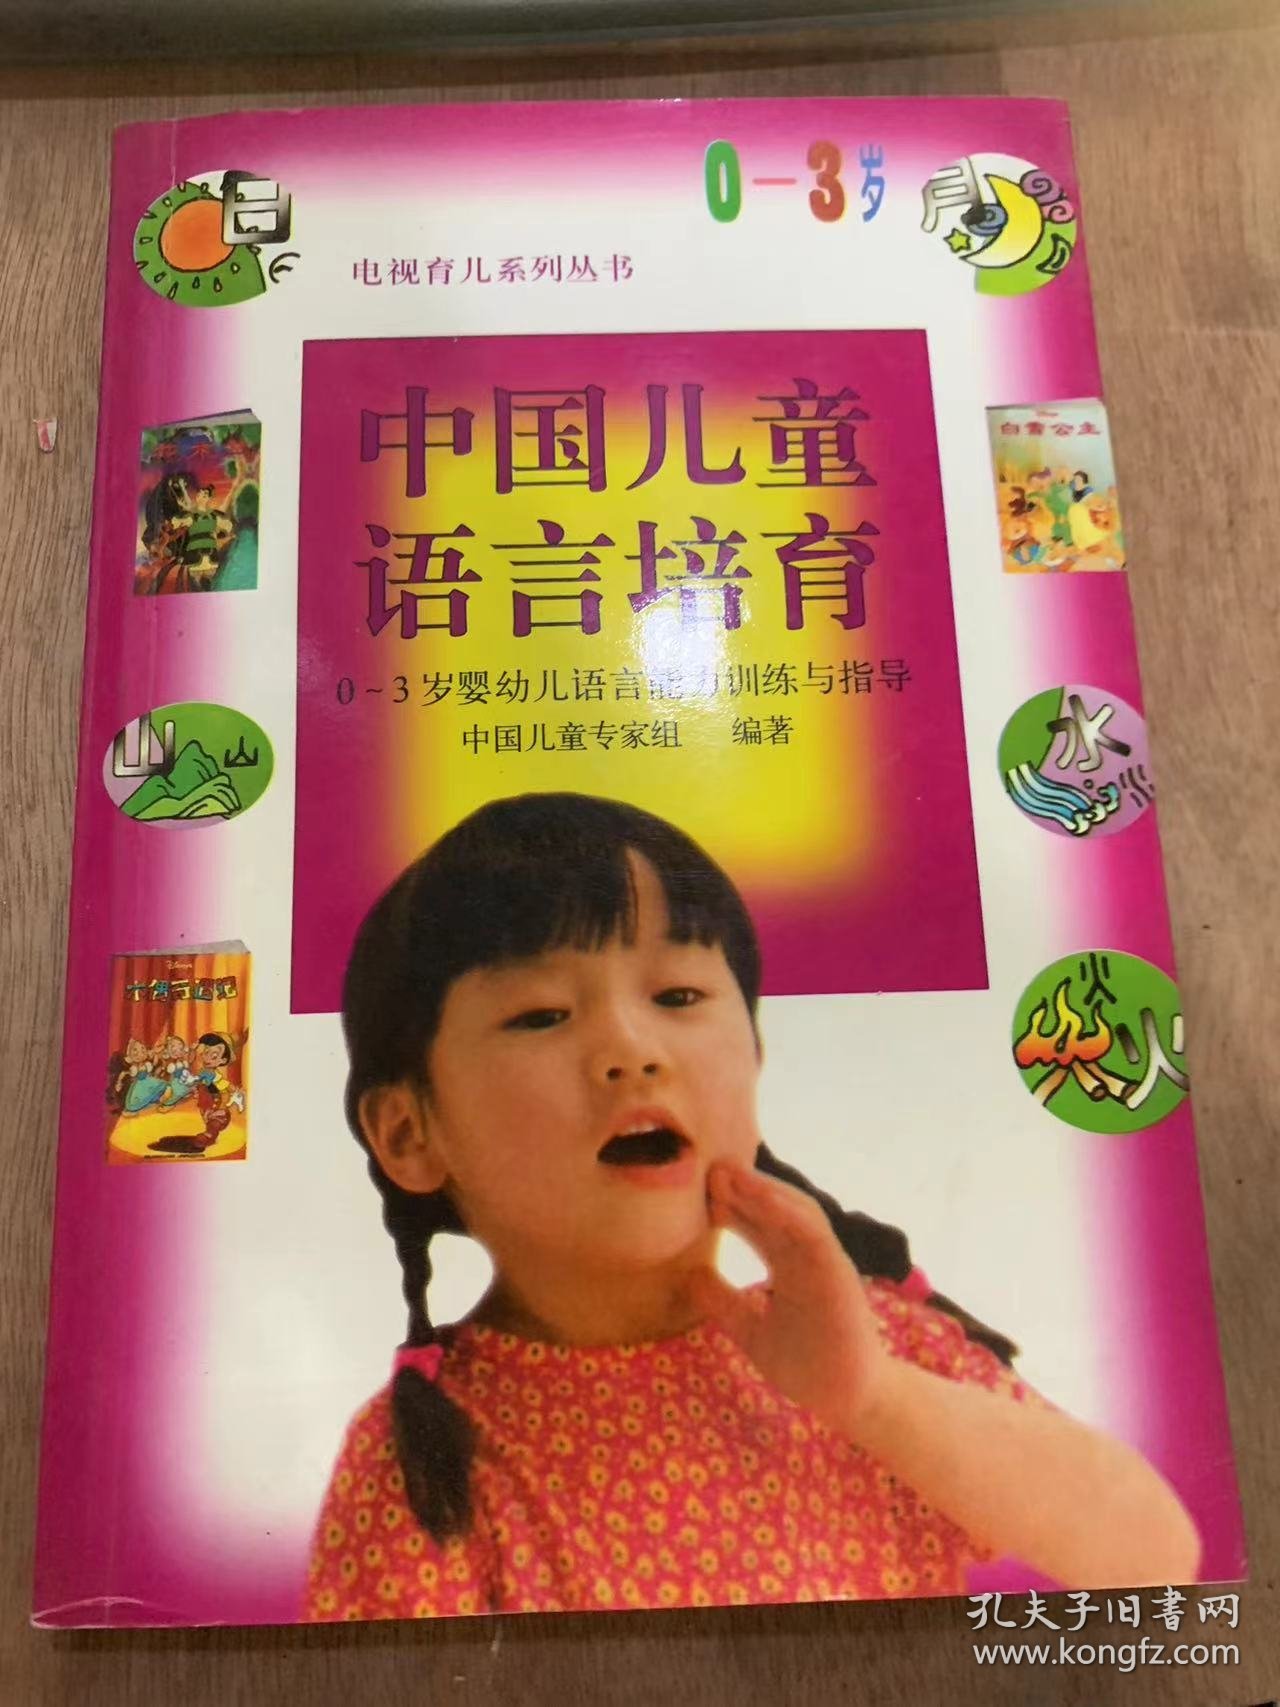 《中国儿童语言培育—0~3岁婴幼儿语言能力训练与指导》/语言的基本知识/语言的本质及其功能/语言是一种符号系统/语言、社会和儿童的关系……